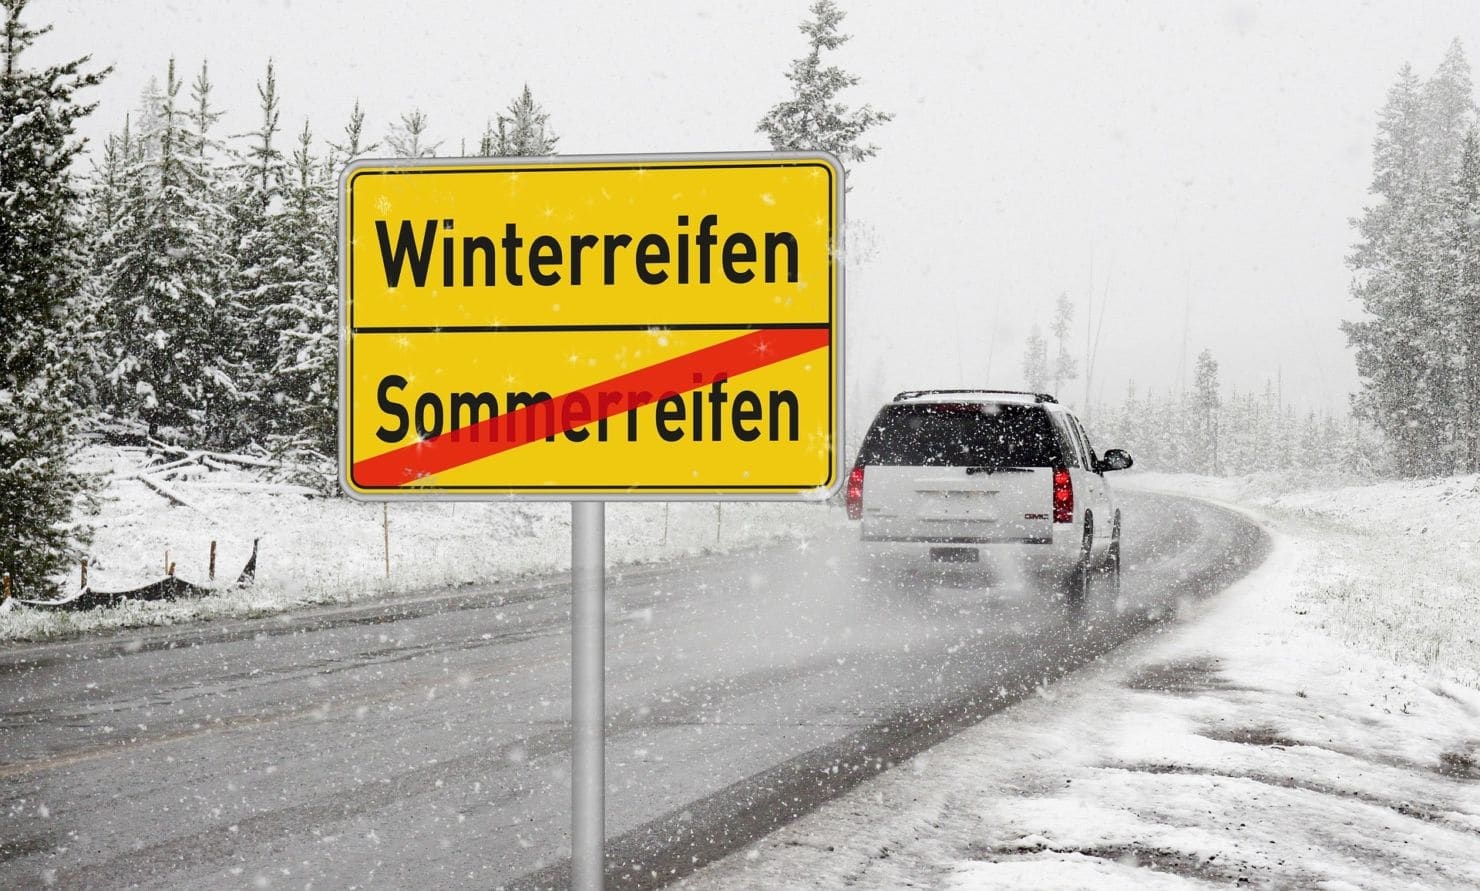 Wenn es langsam kälter wird, verändern sich die Bedingungen deutlich: Fahrzeuge verhalten sich auf glatten oder verschneiten Untergründen ganz anders als im Sommer.